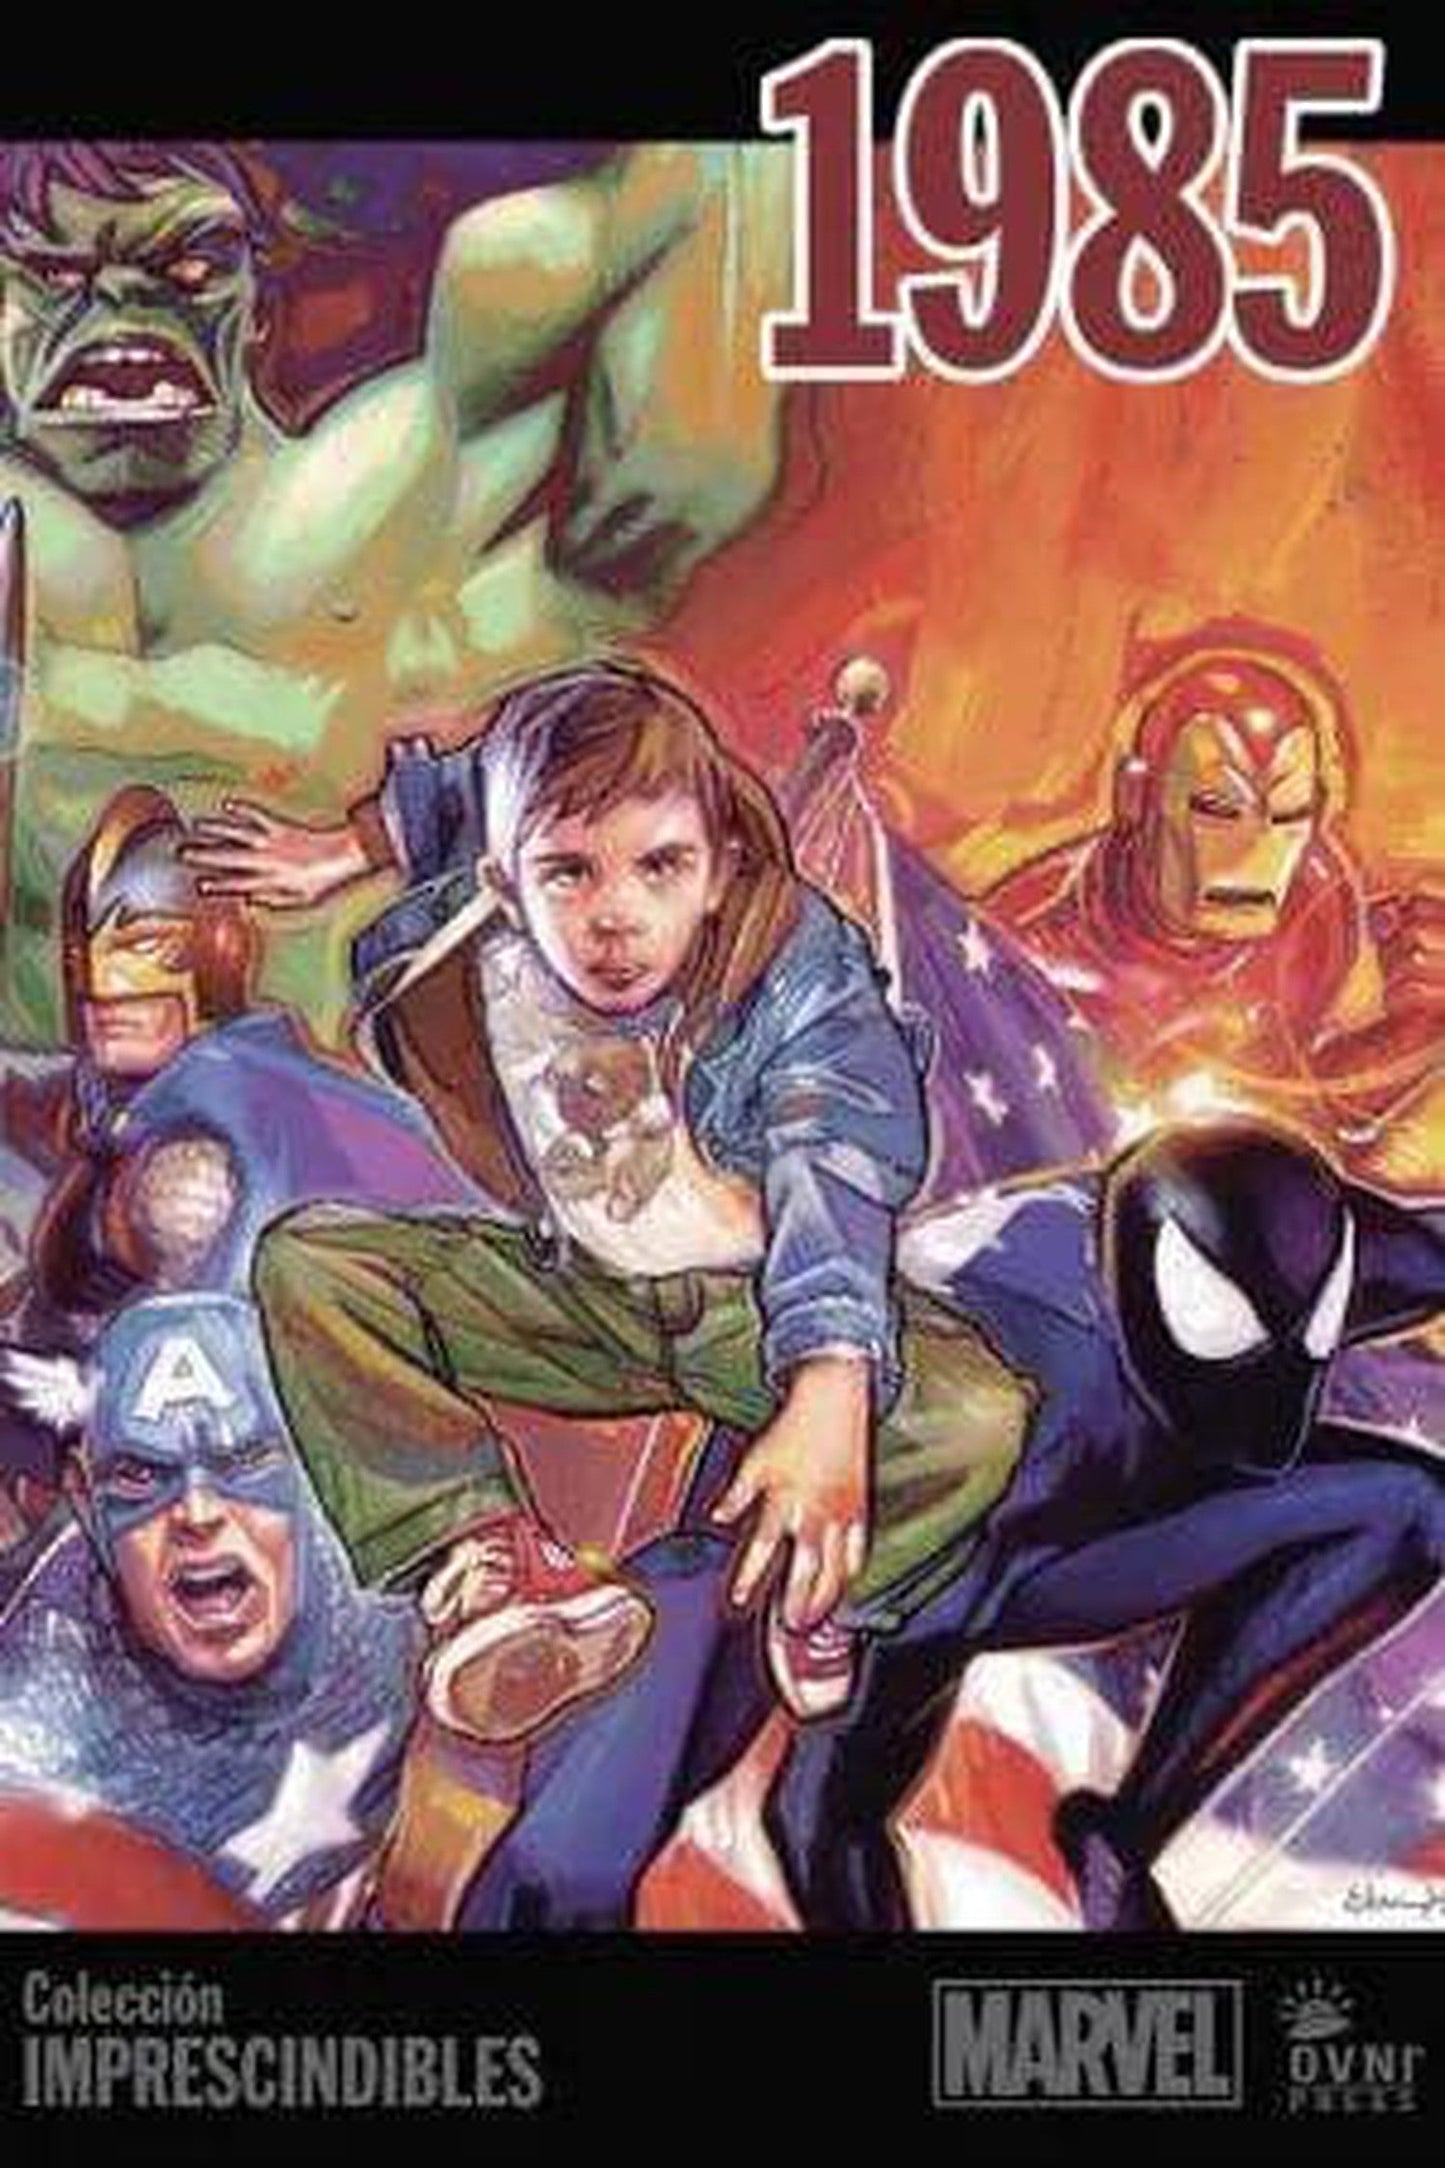 Imprescindibles Marvel Vol. 10: 1985